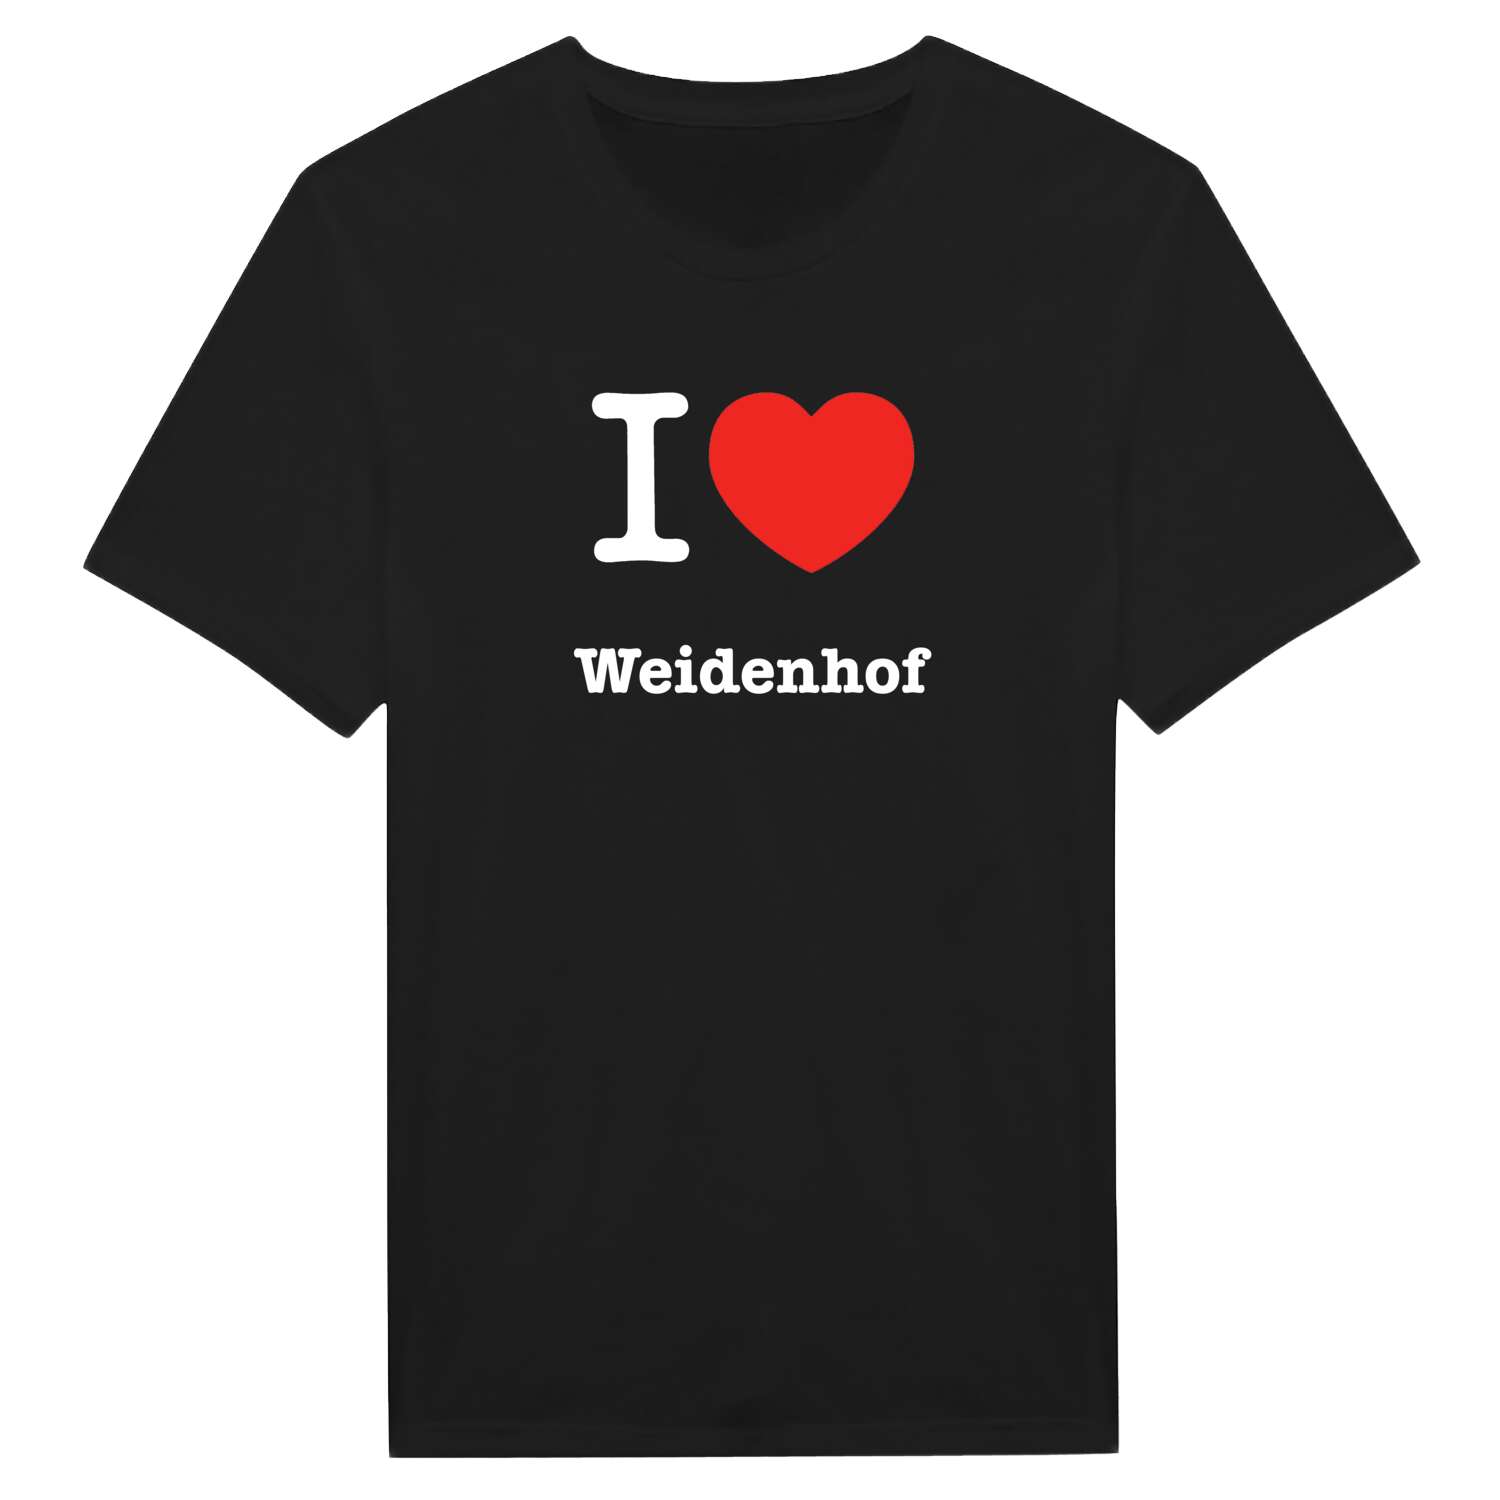 Weidenhof T-Shirt »I love«